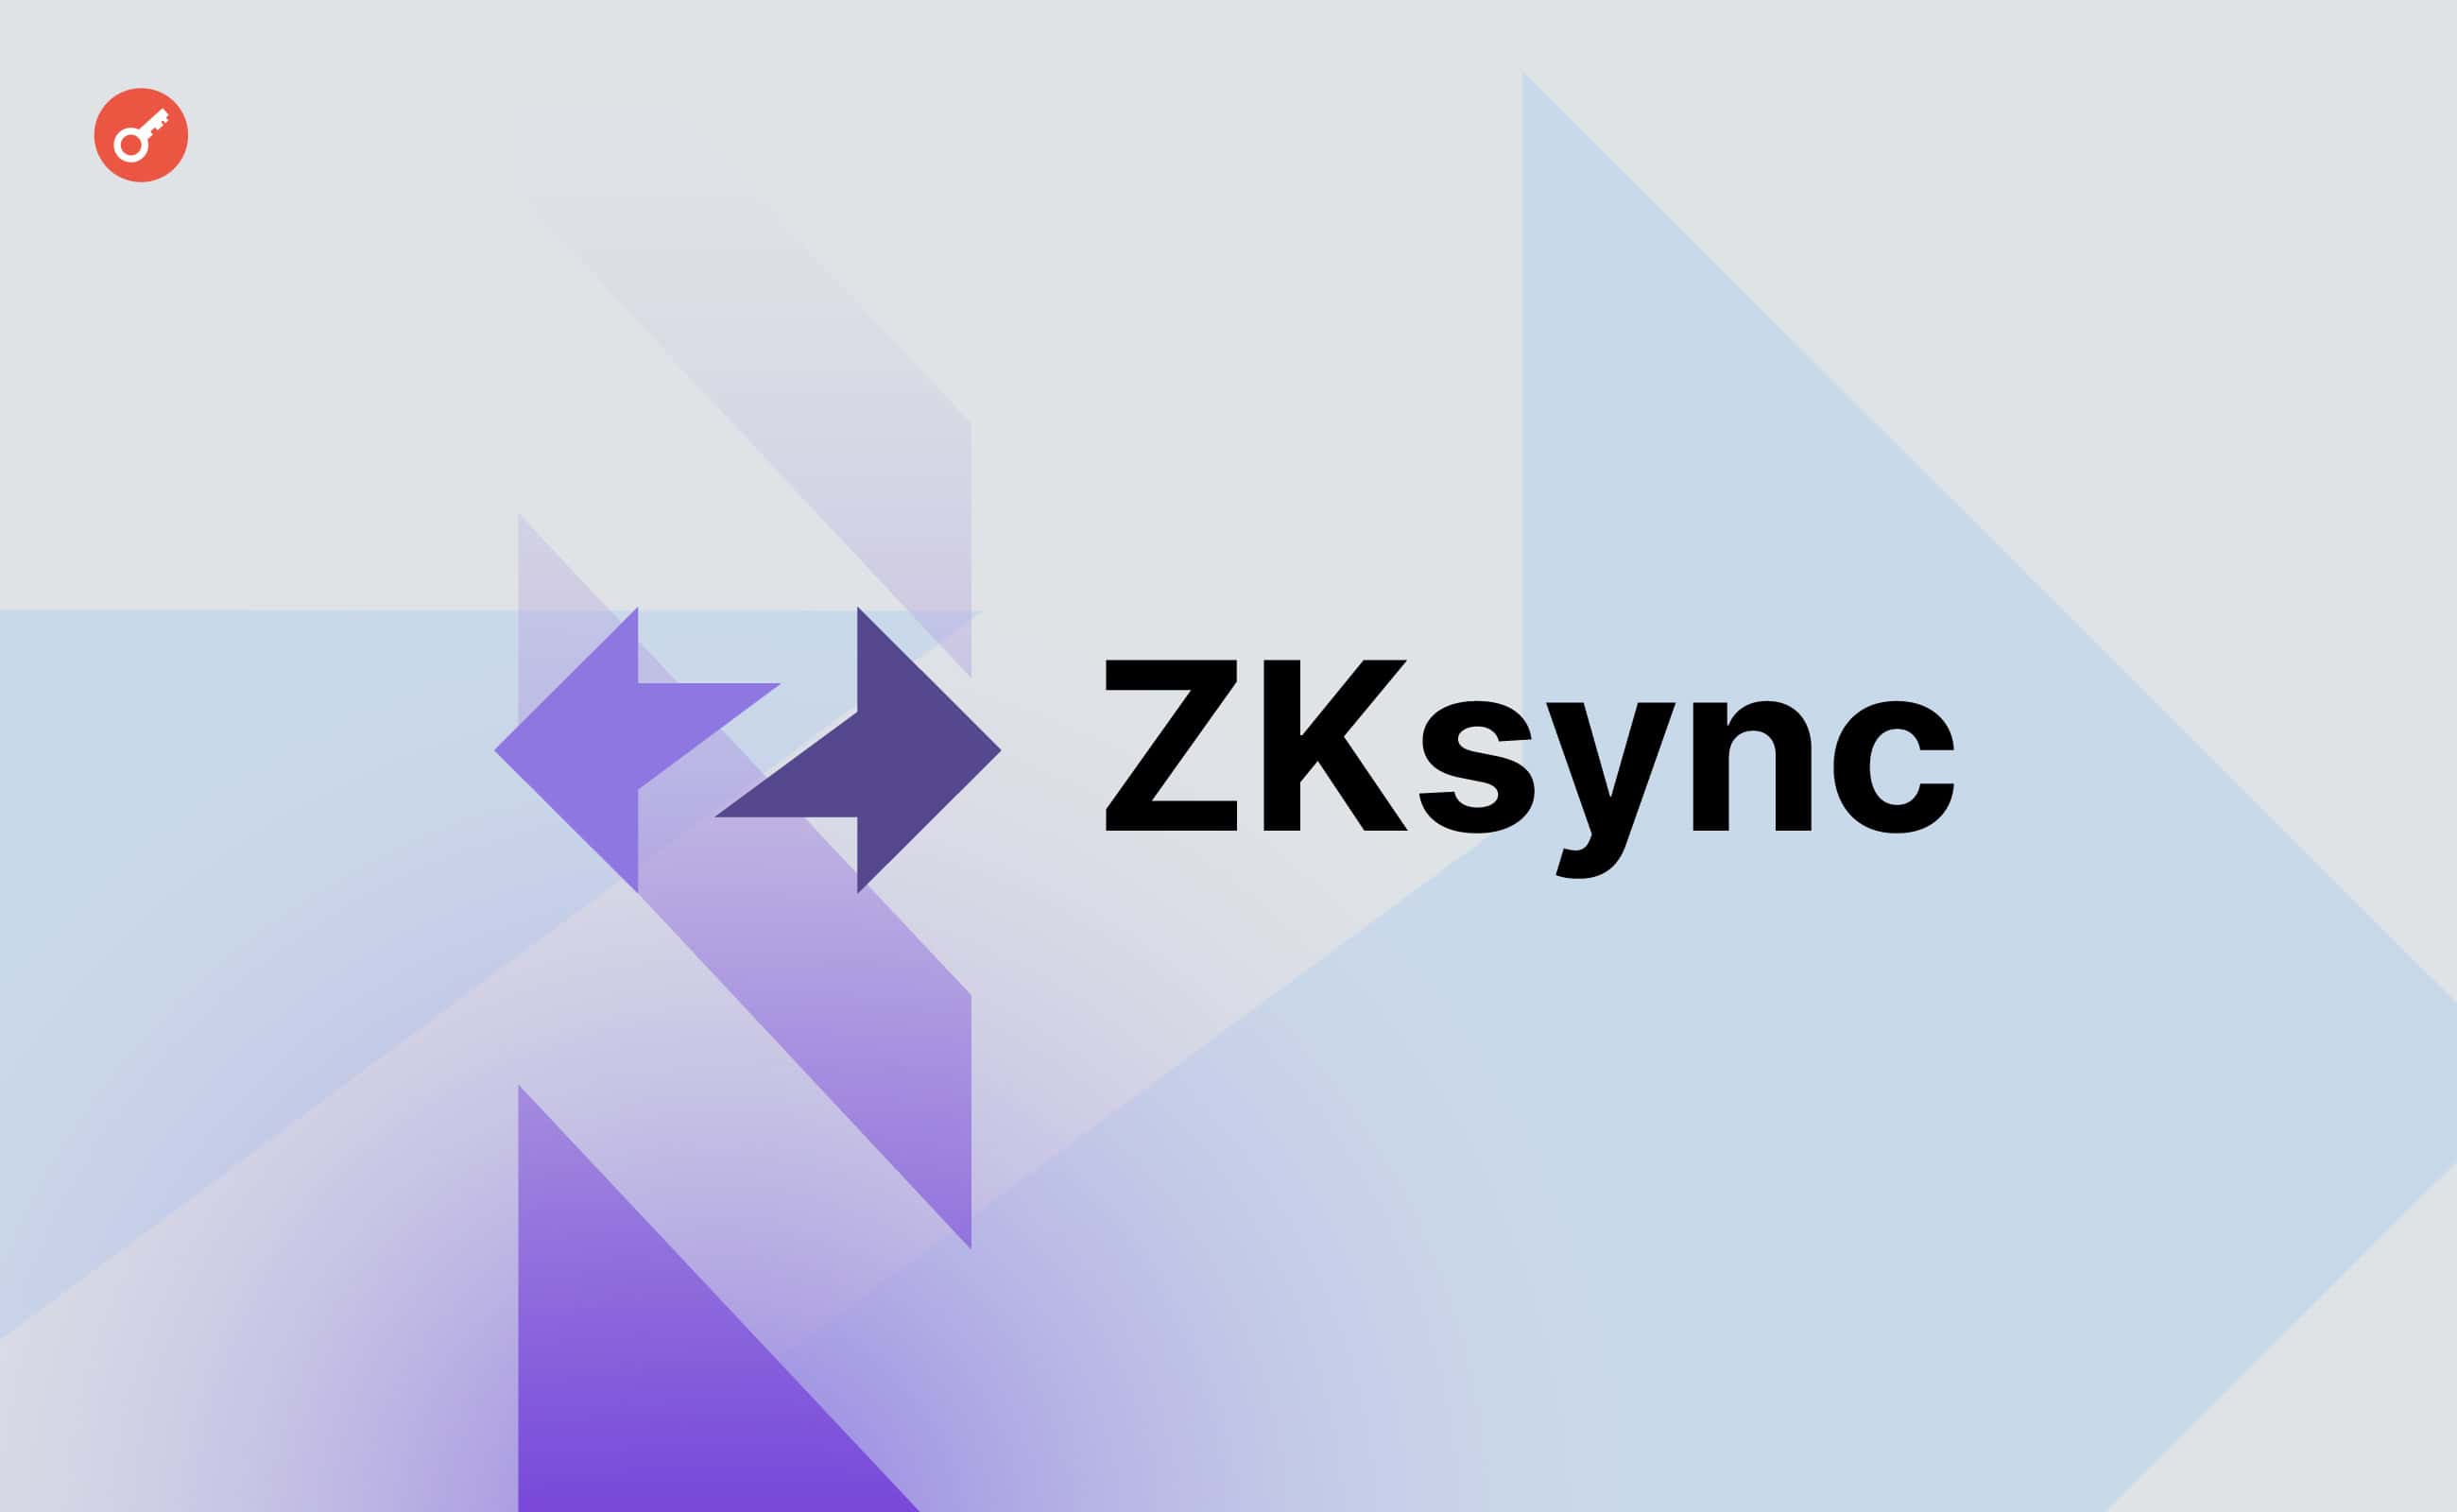 Токен ZKsync обвалился на более чем 20% после листинга на биржах. Заглавный коллаж новости.